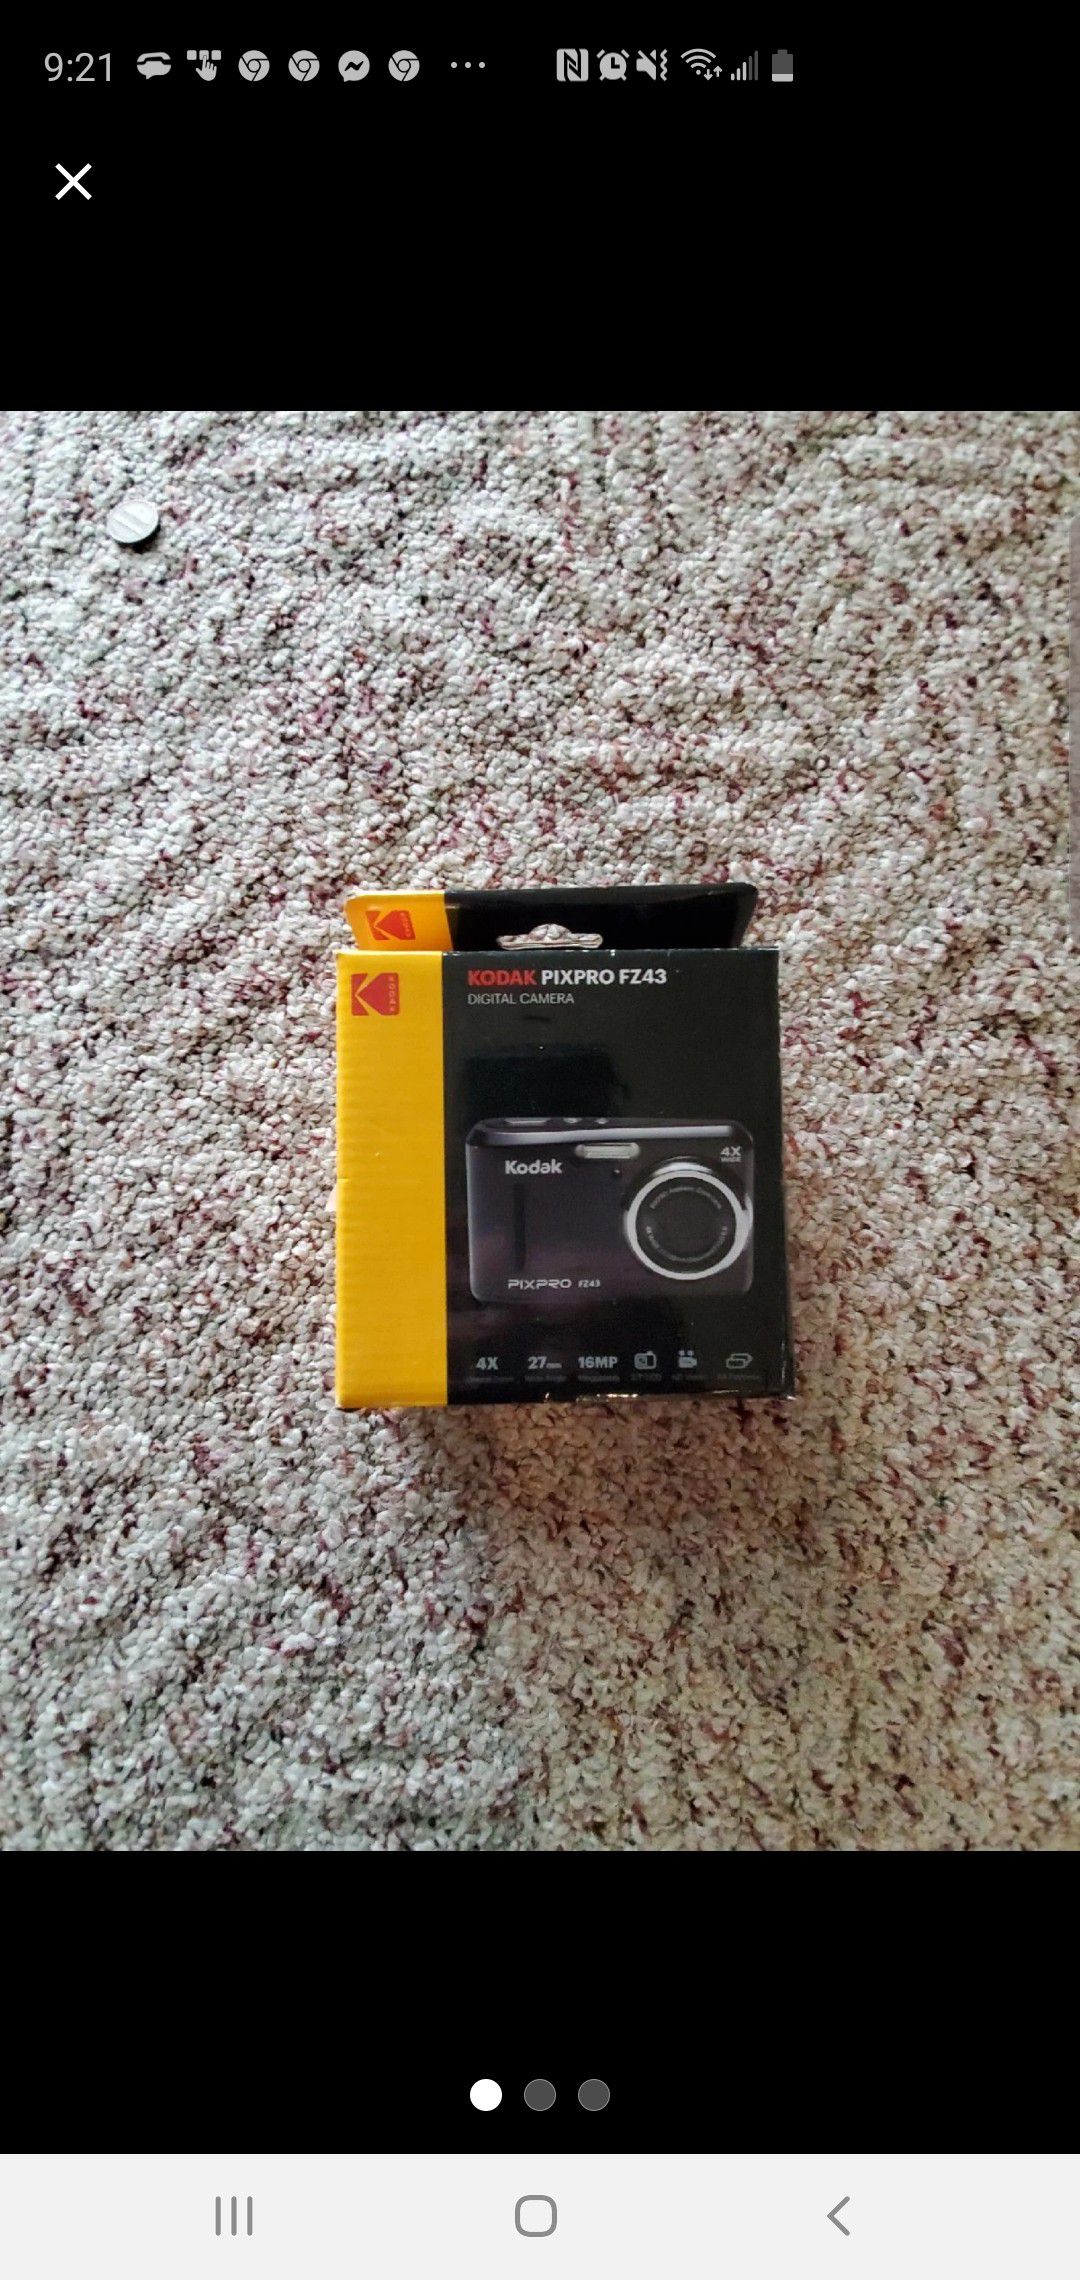 Kodak pixproFZ43 digital camera